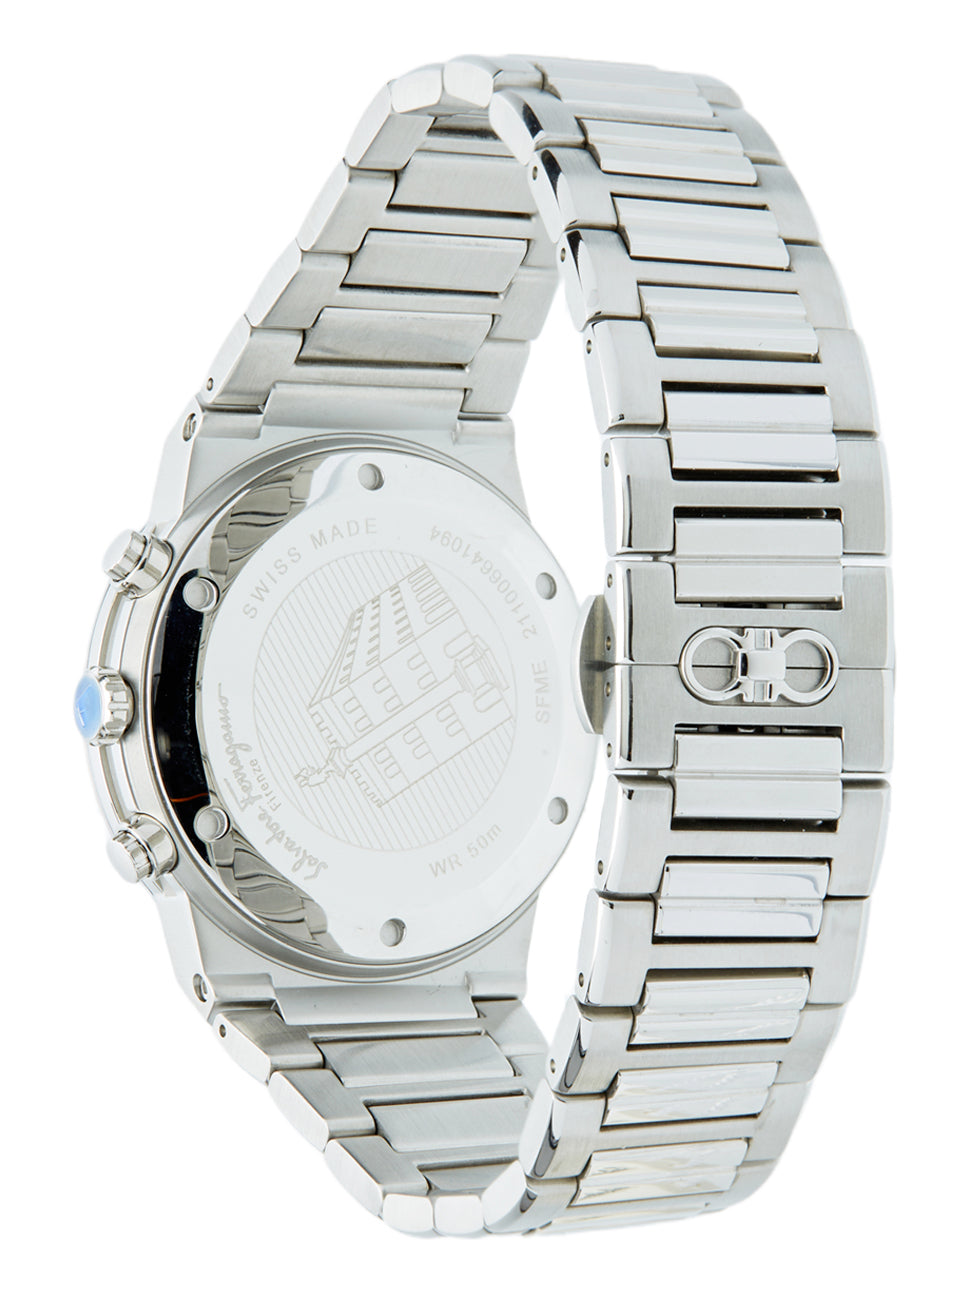 Ferragamo Men's Sapphire Chrono Watch Black/Silver 41mm SFME00321